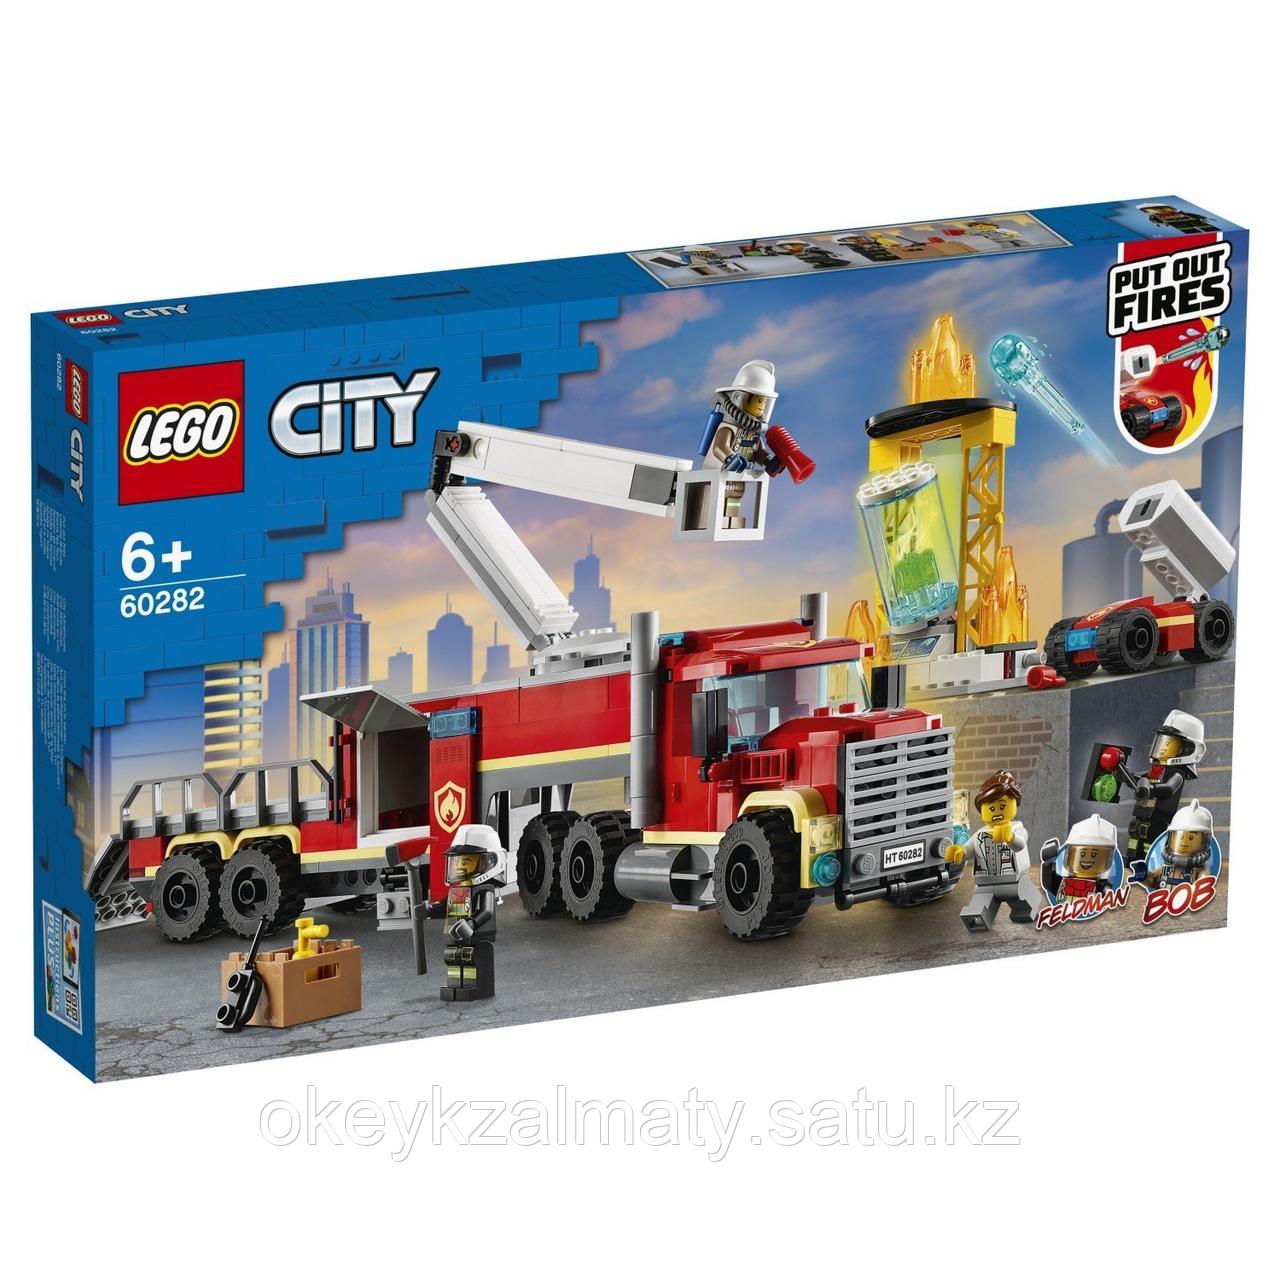 LEGO City: Команда пожарных 60282